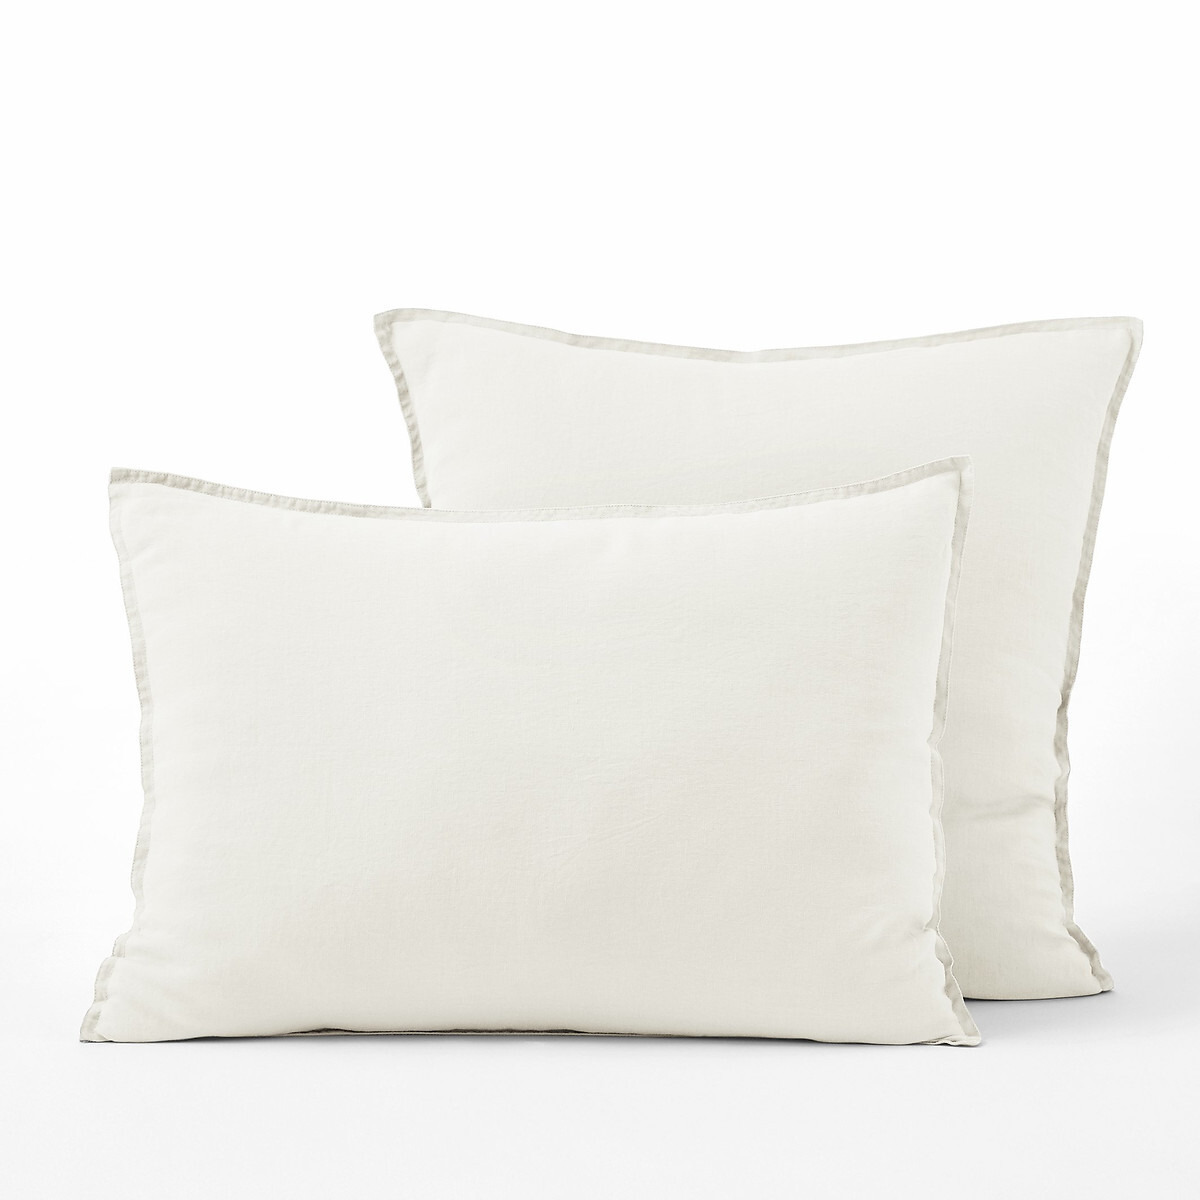 Elina 100% Washed Linen Pillowcase - image 1